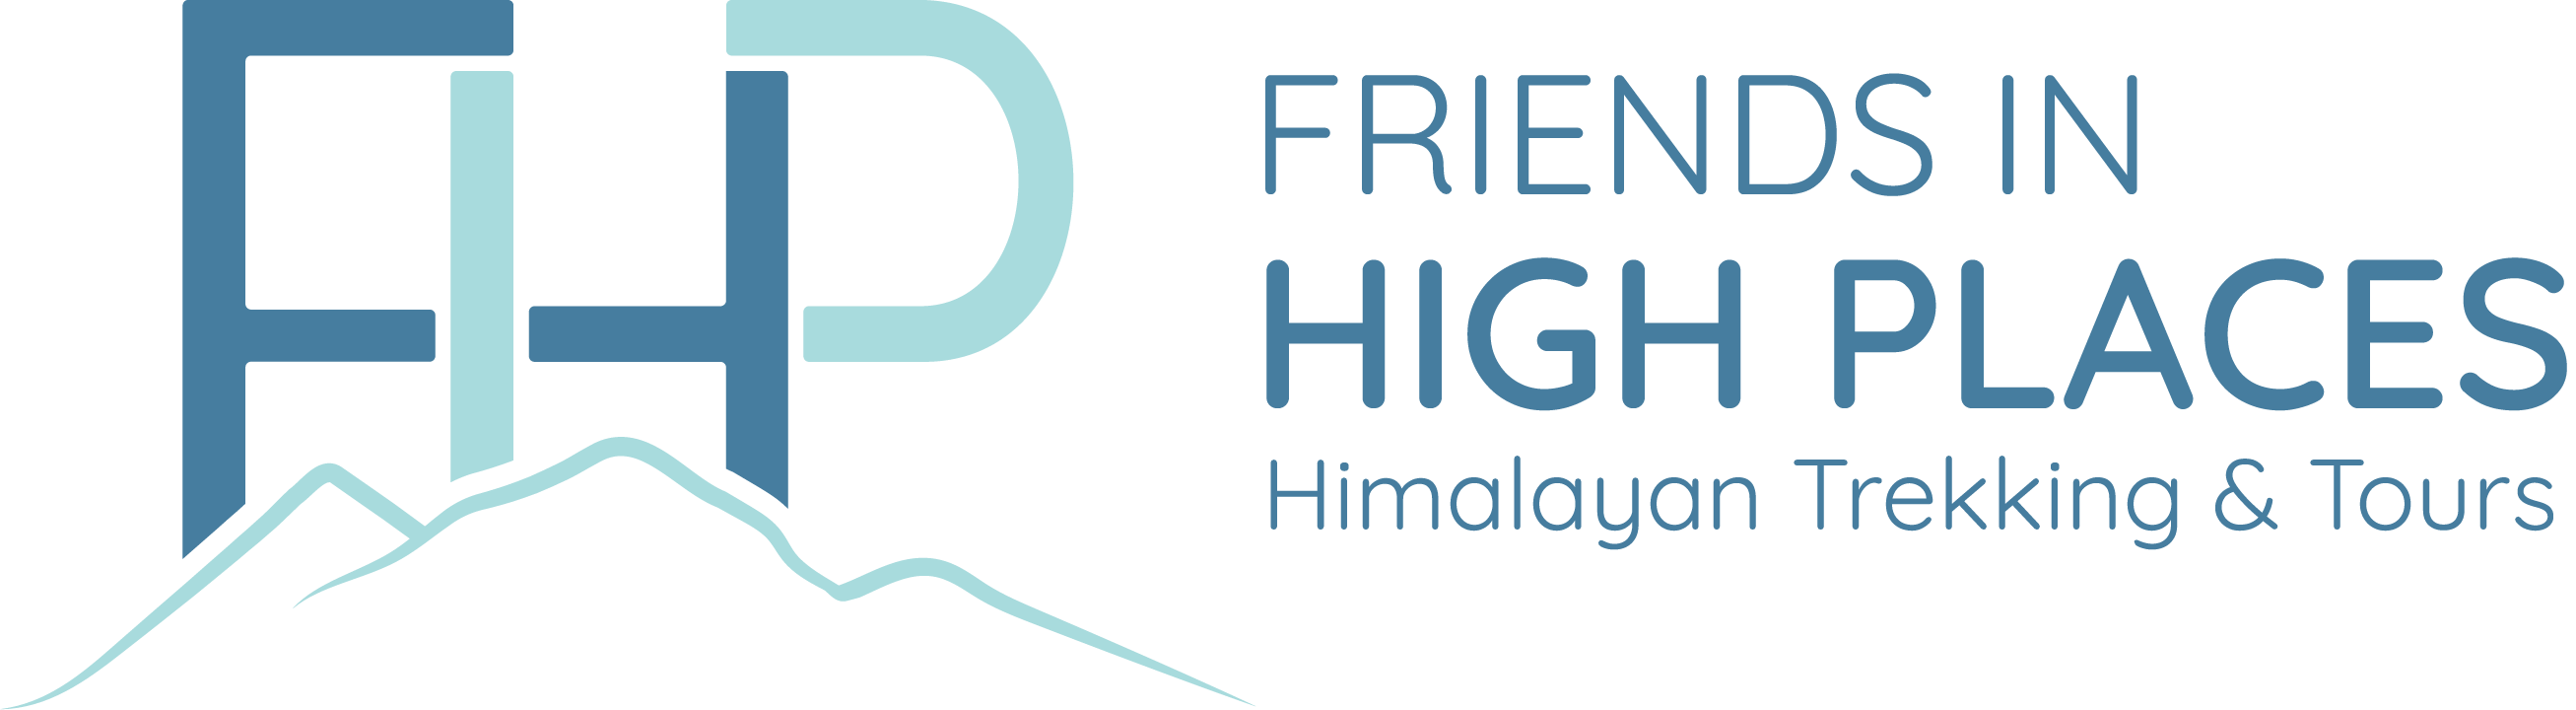 fihp logo